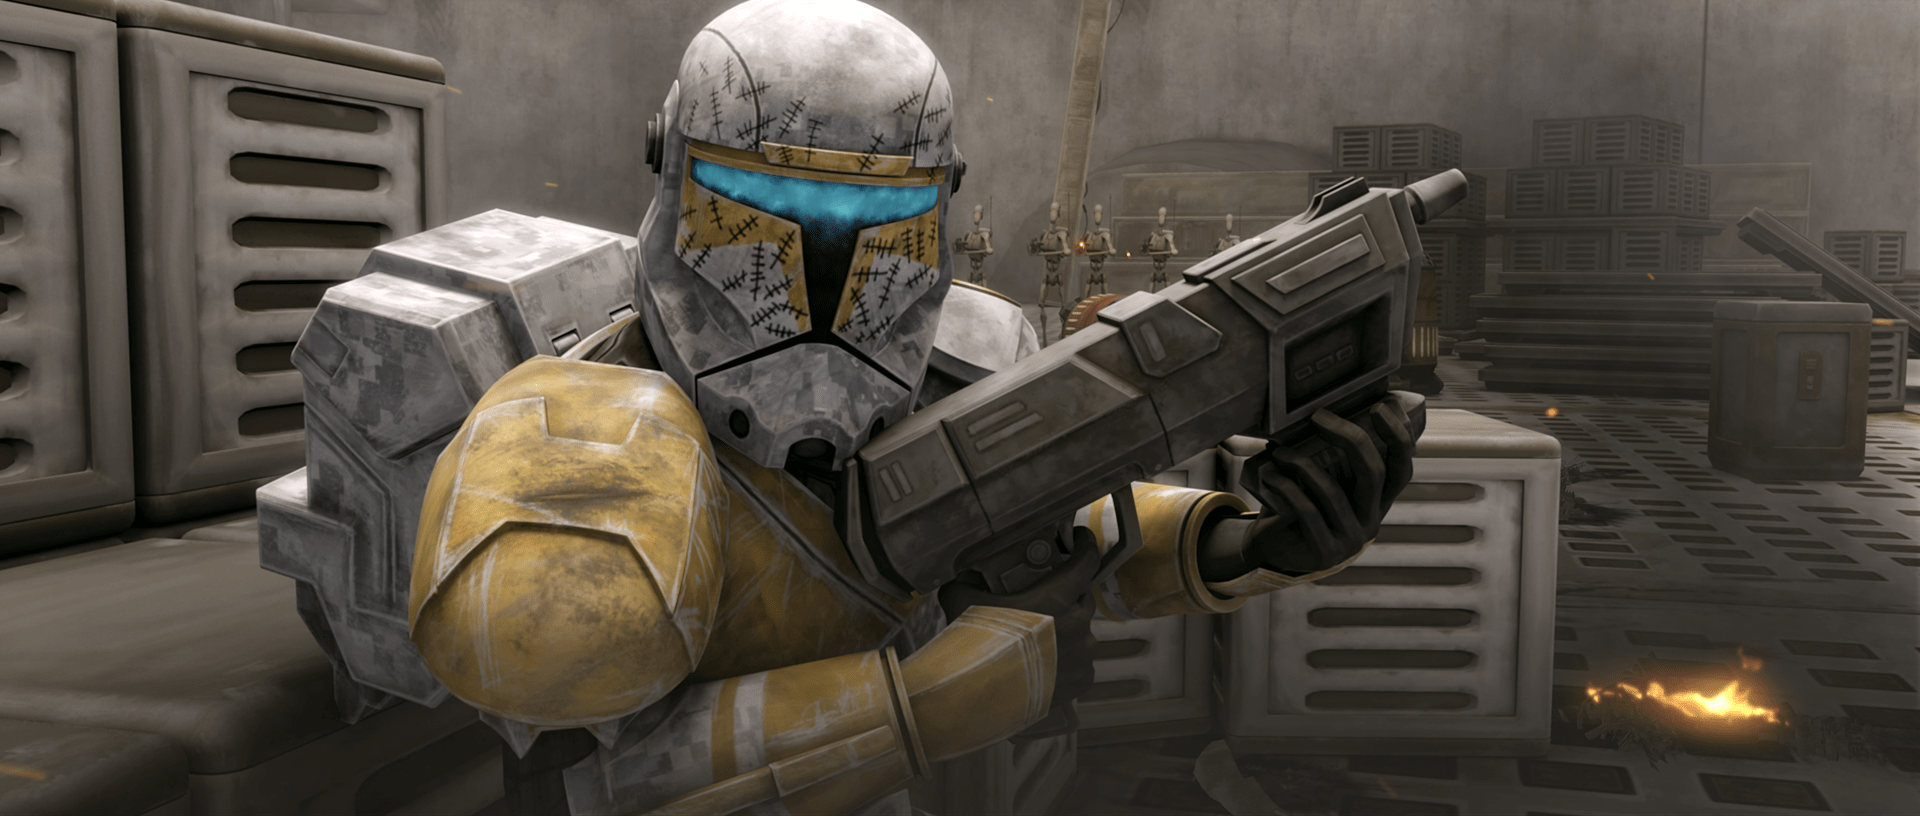 star wars republic commando hd graphics mod